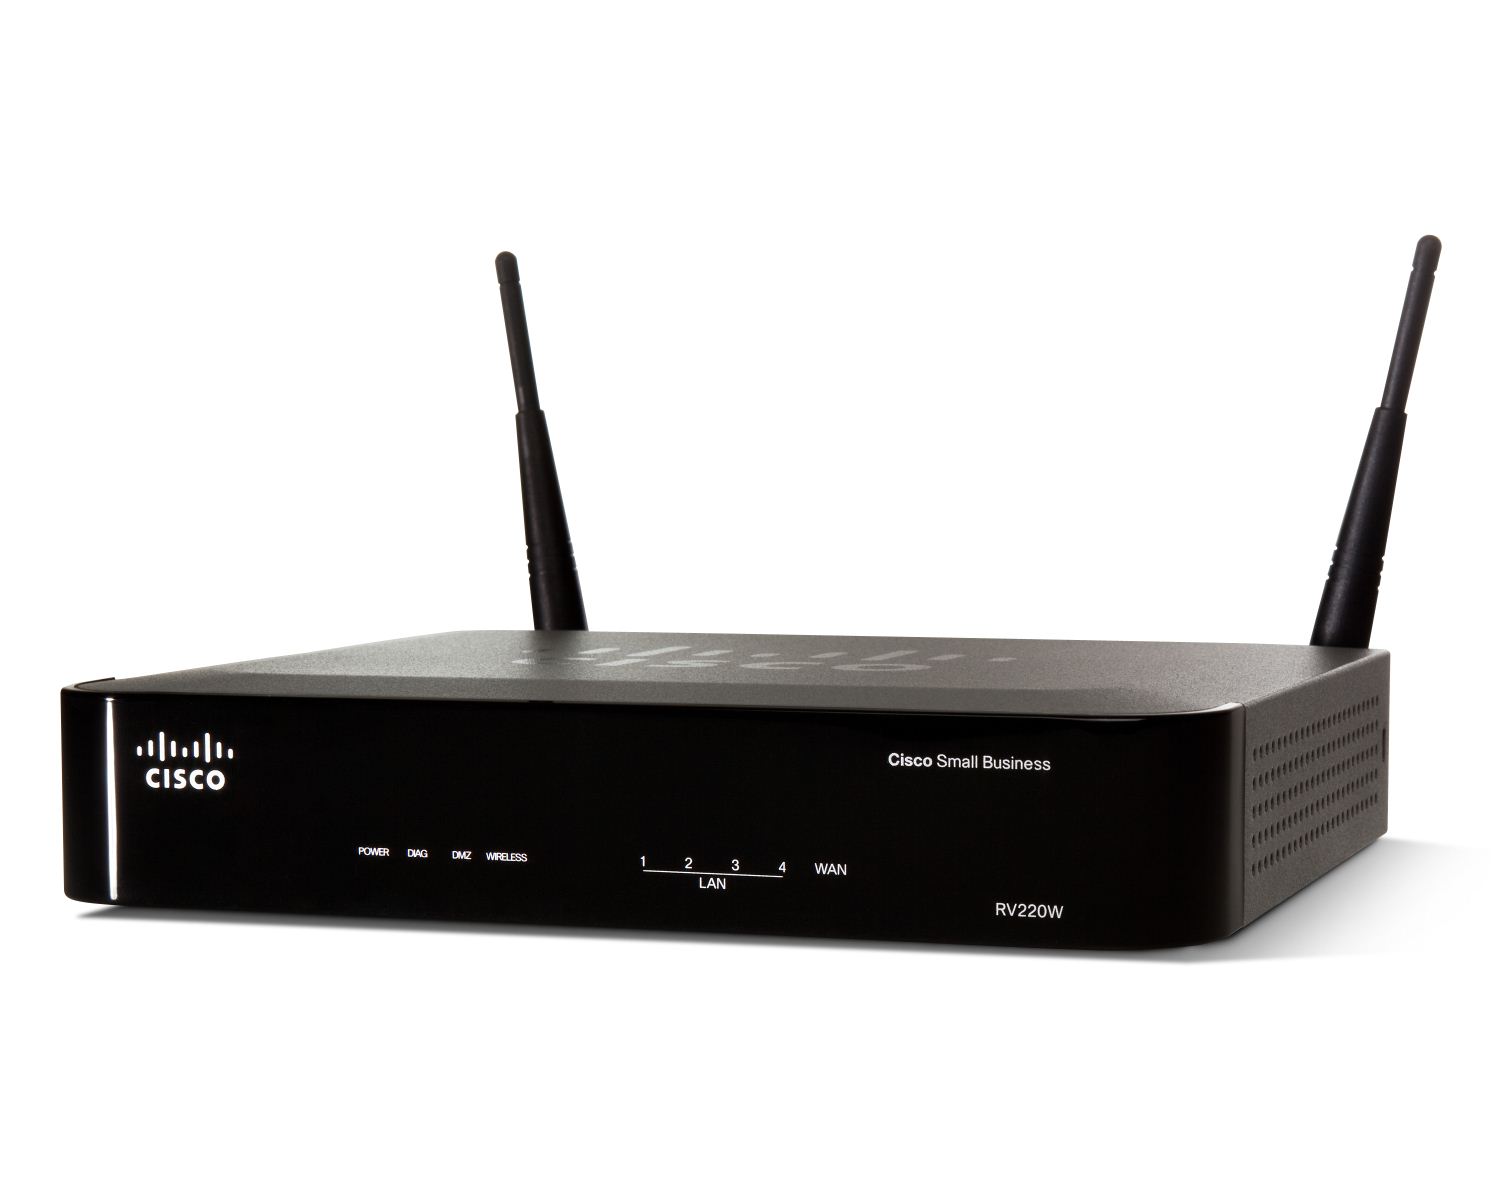 Cisco RV220W Wireless Network Security Firewall (RV220W)